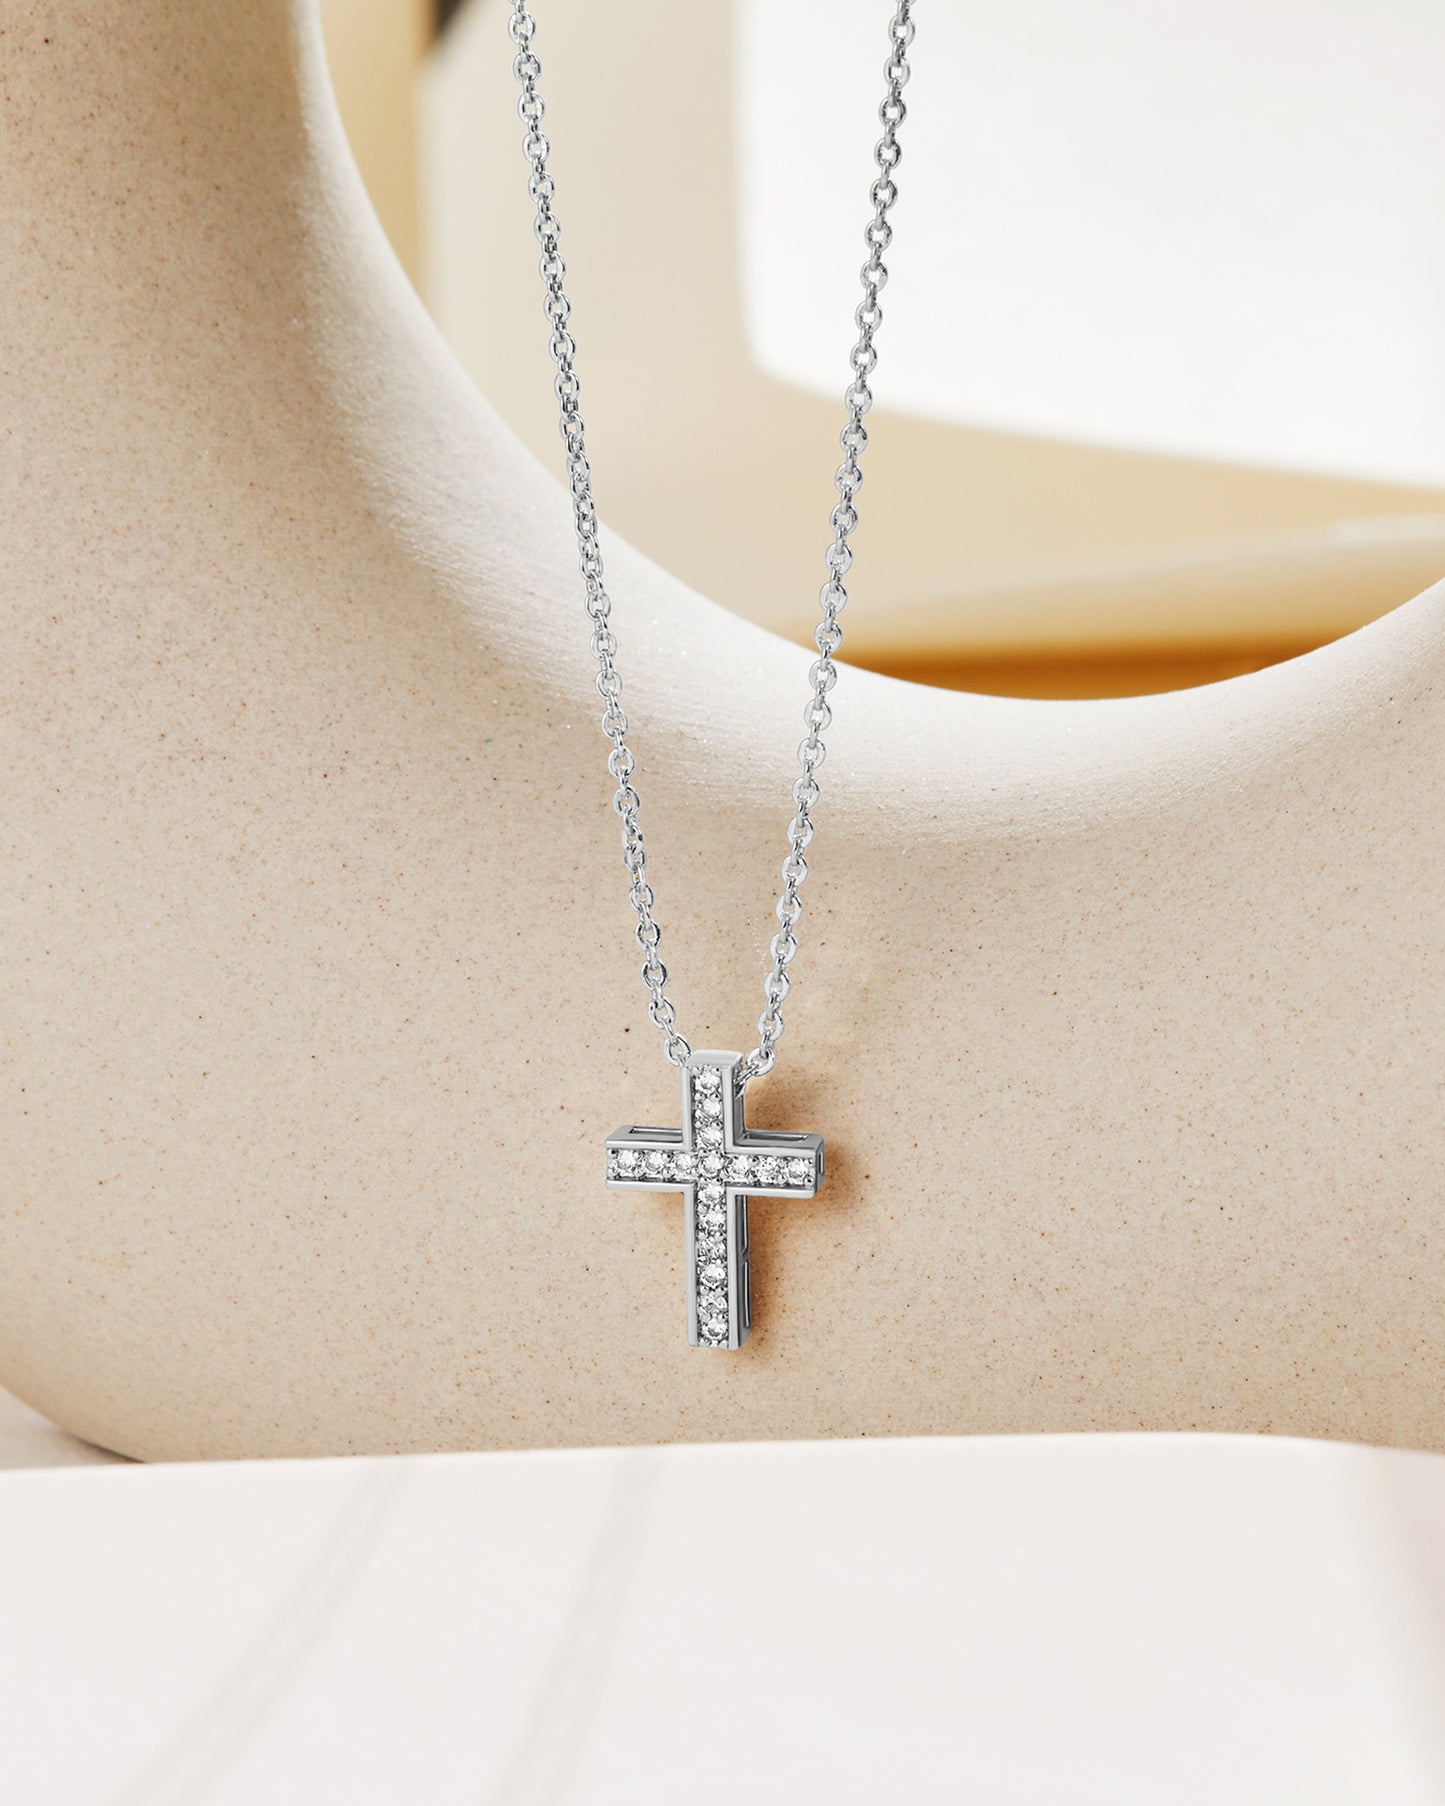 Swarovski Crystal Cross Necklace NWT Rare! | eBay